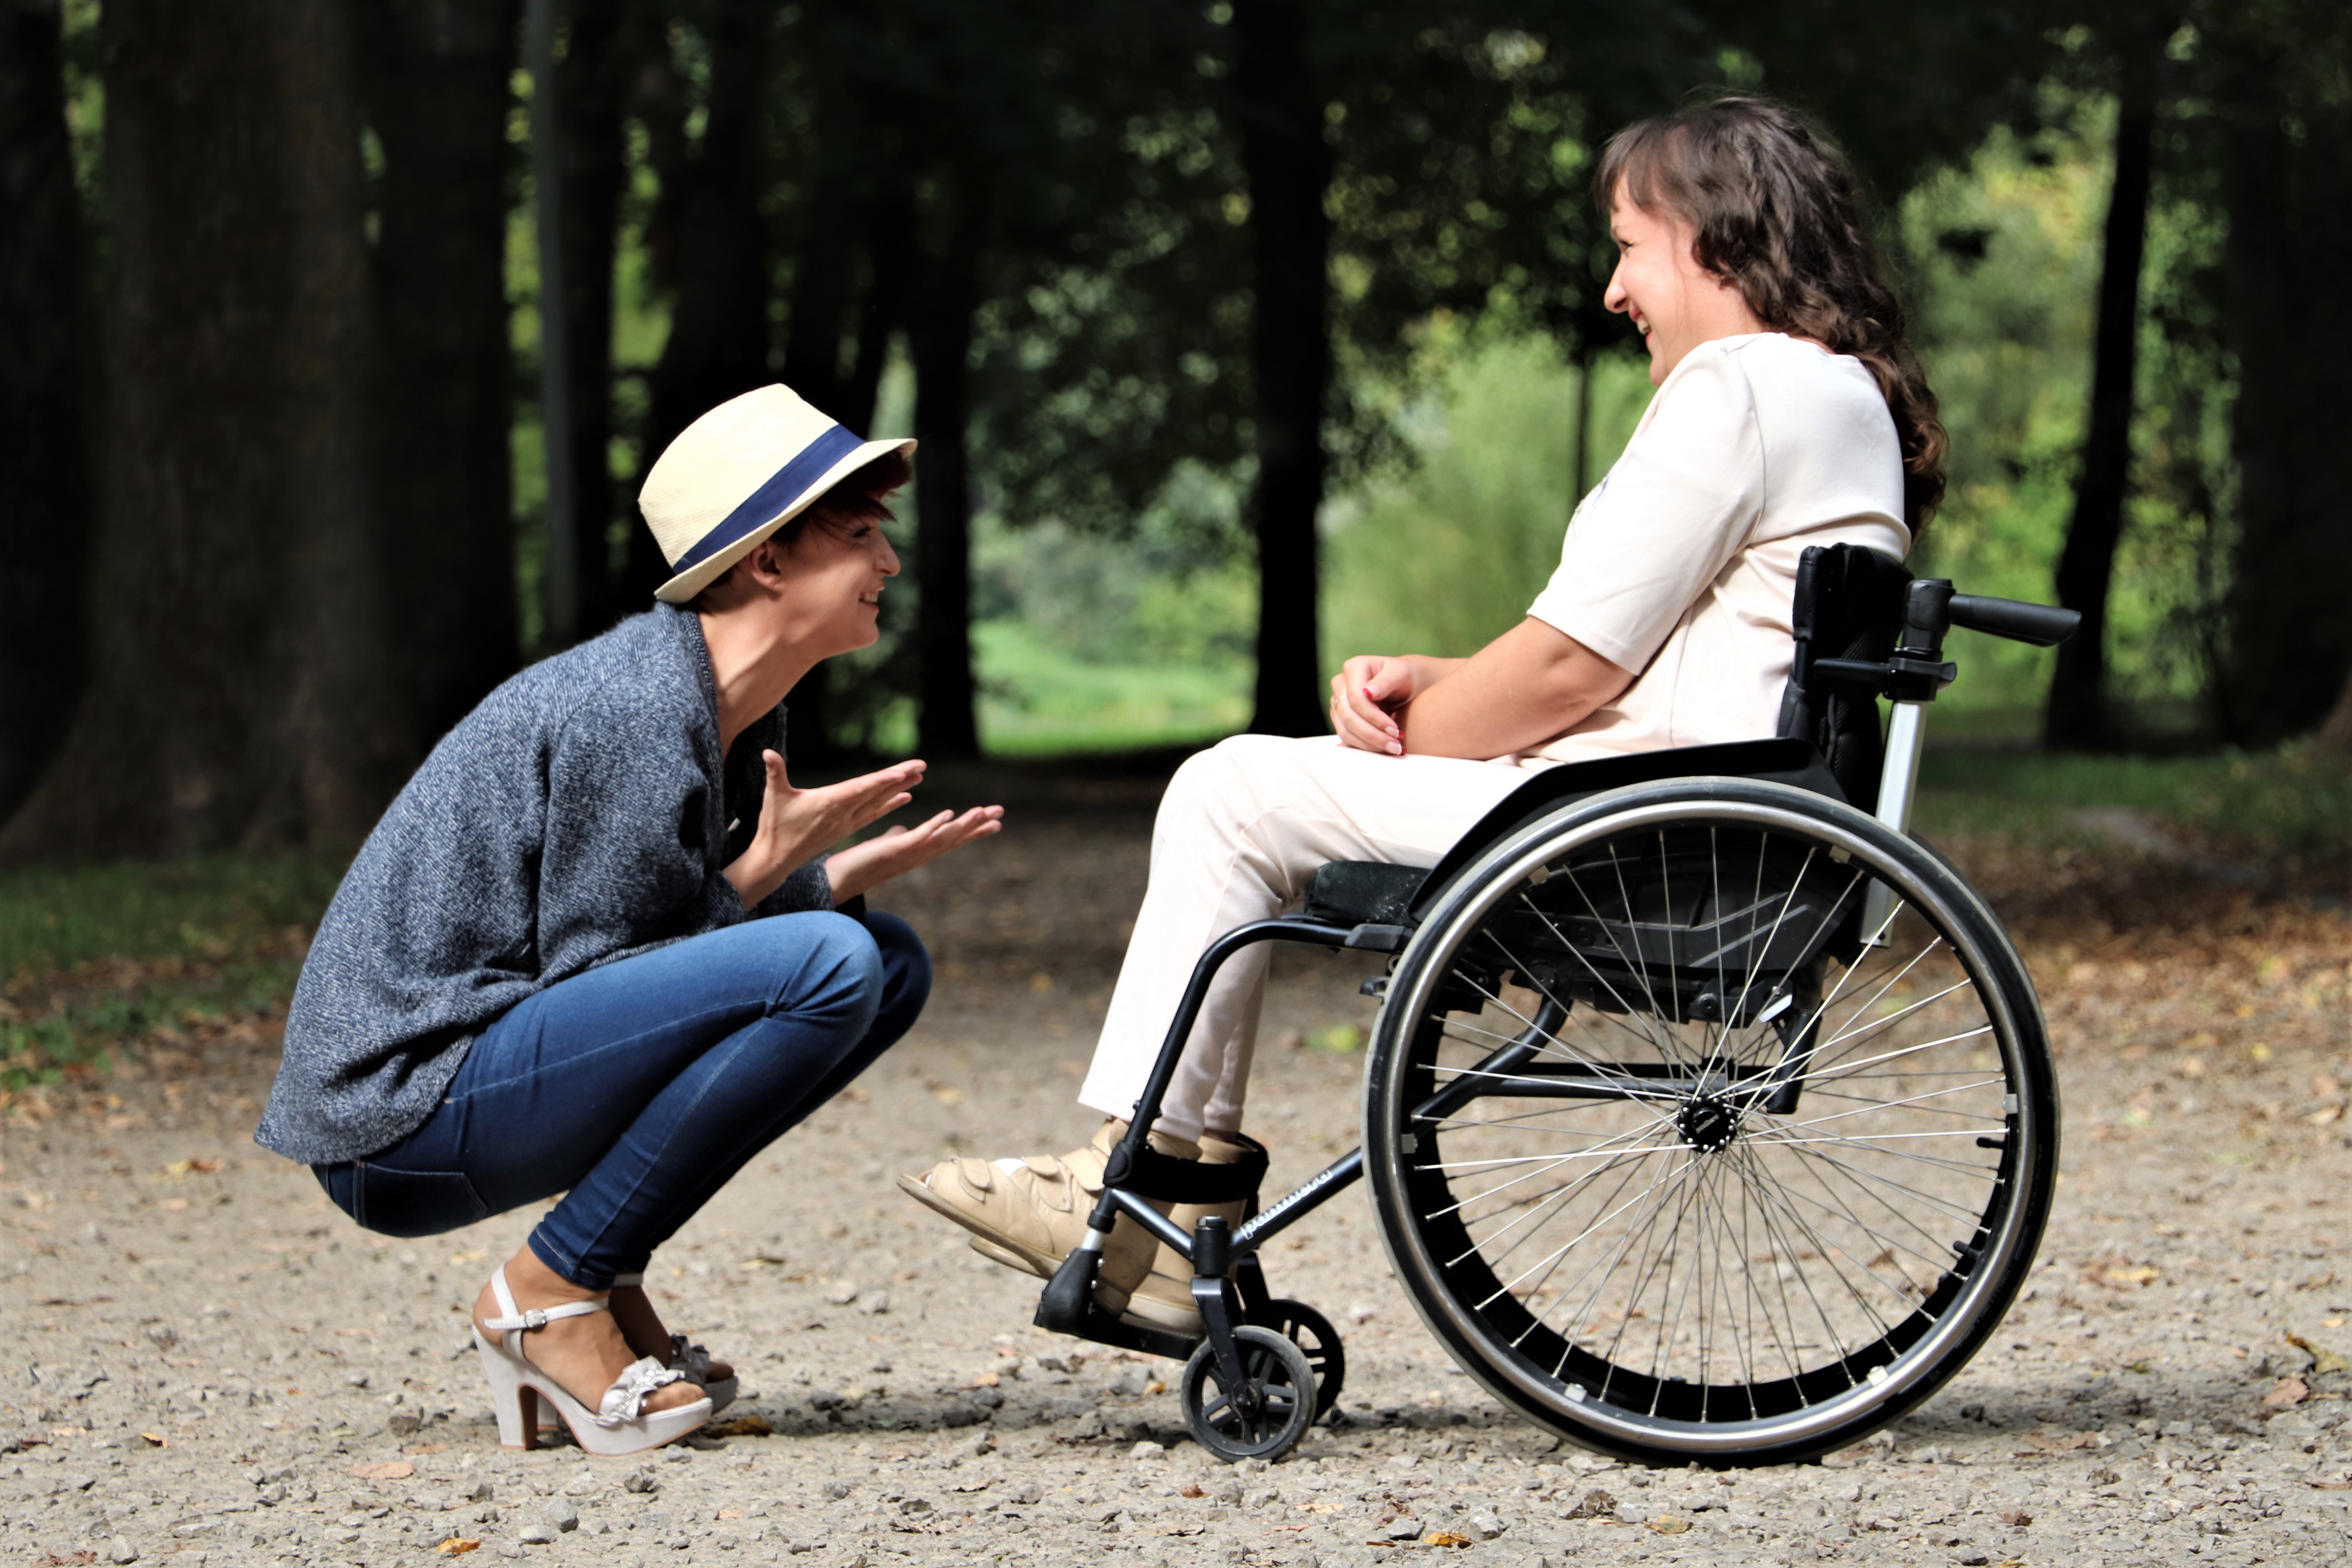 En person på huk mittemot en person i rullstol 